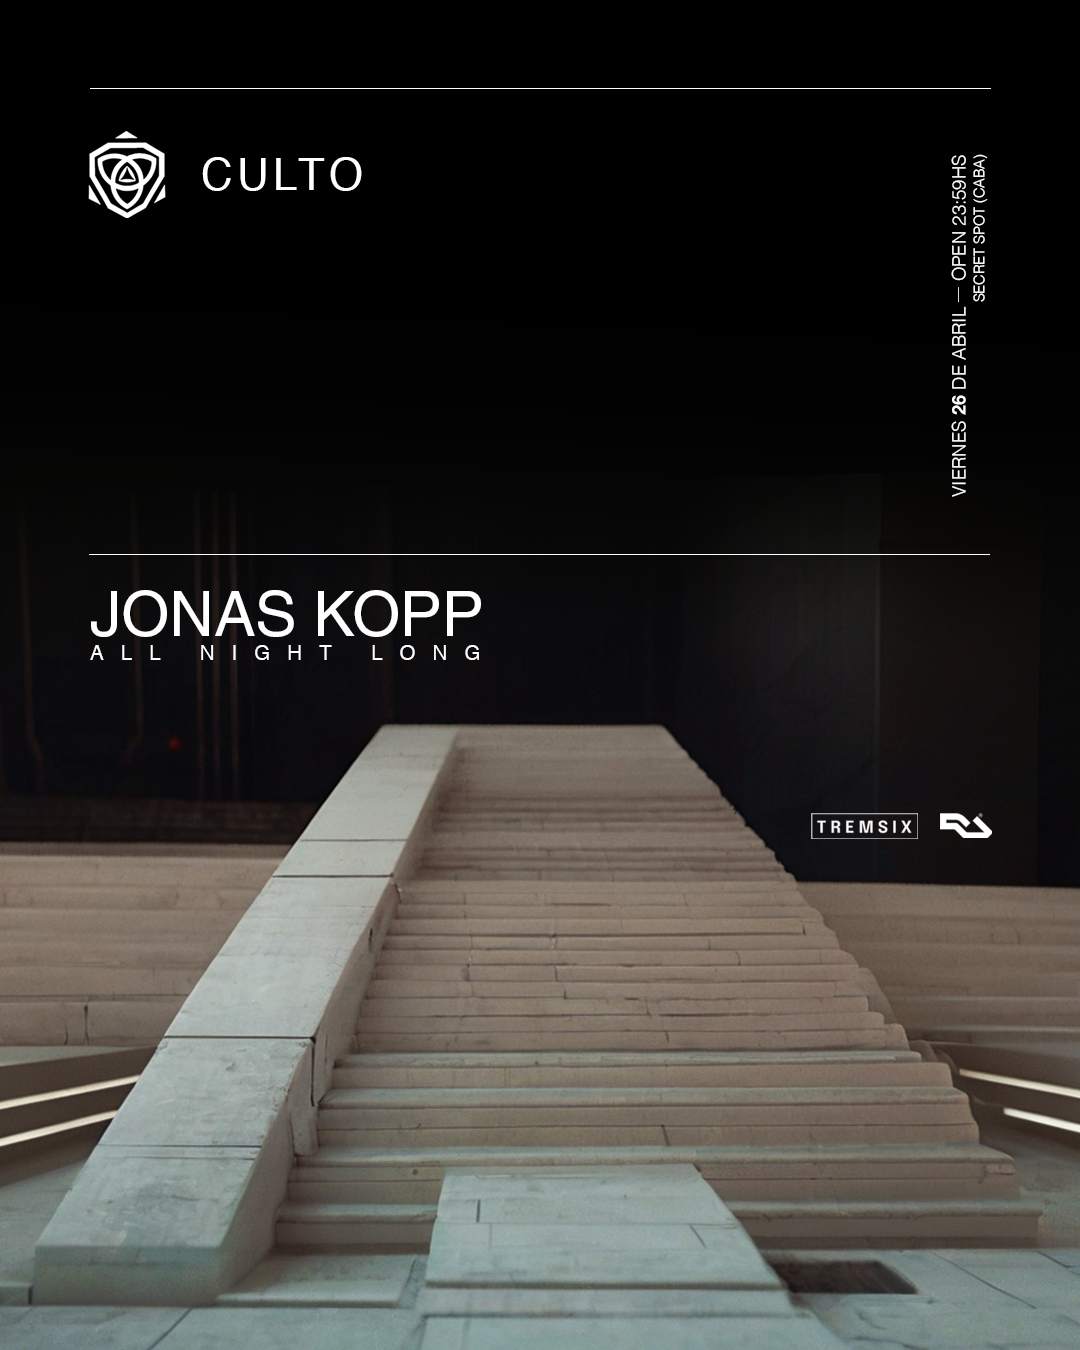 Culto pres. Jonas Kopp All Night Long at Secret Spot - フライヤー表